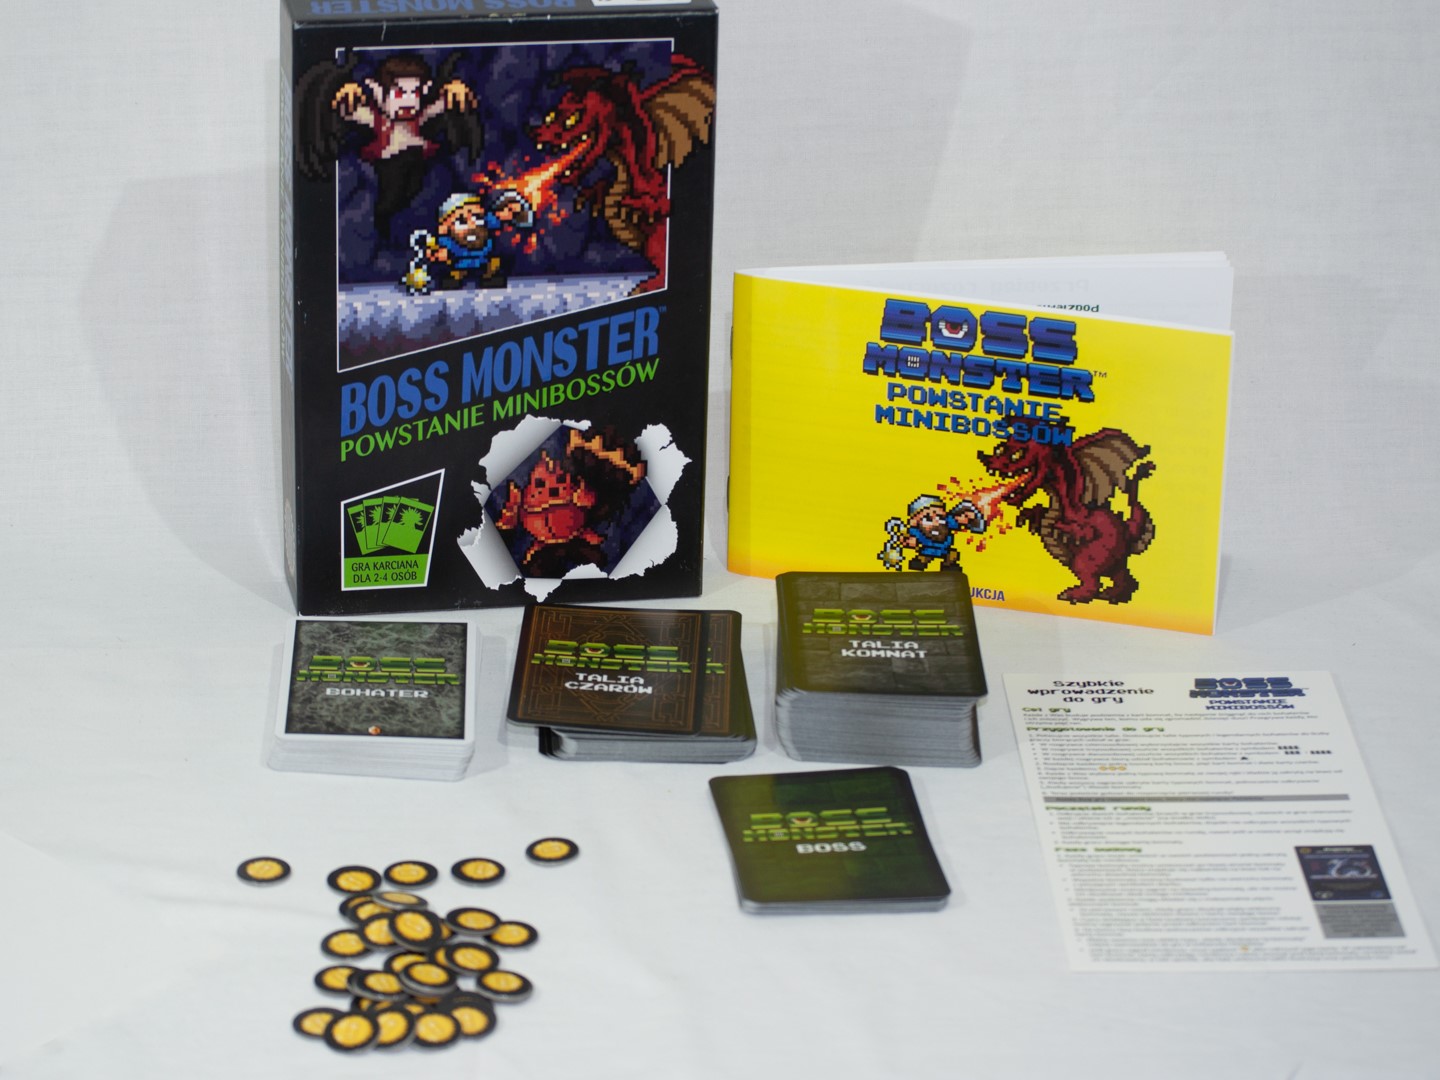 Boss Monster Powstanie Minibossów (Gra karciana) - Darmowa dostawa